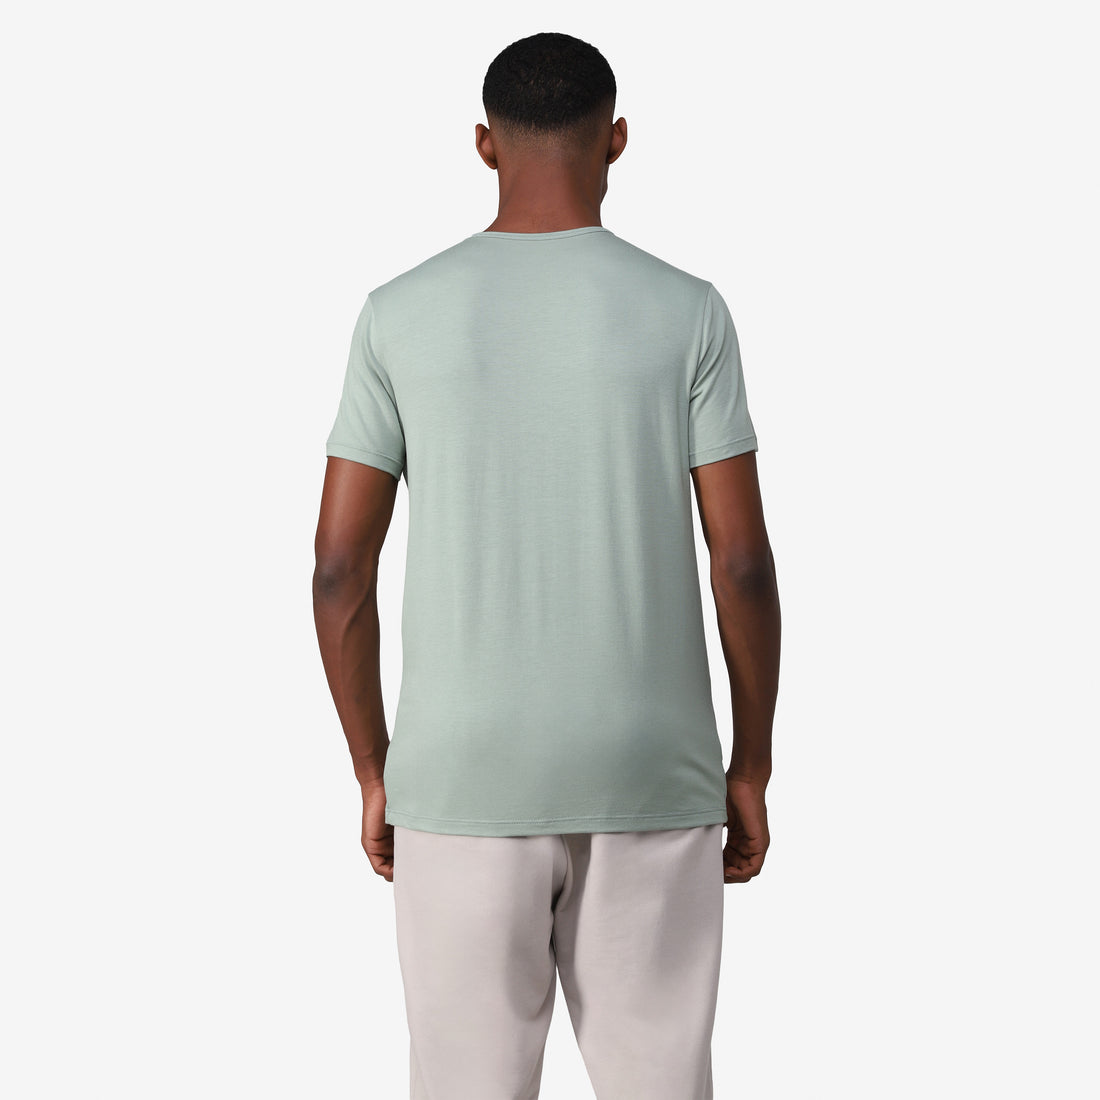 Tech T-Shirt Modal - Verde Pistache